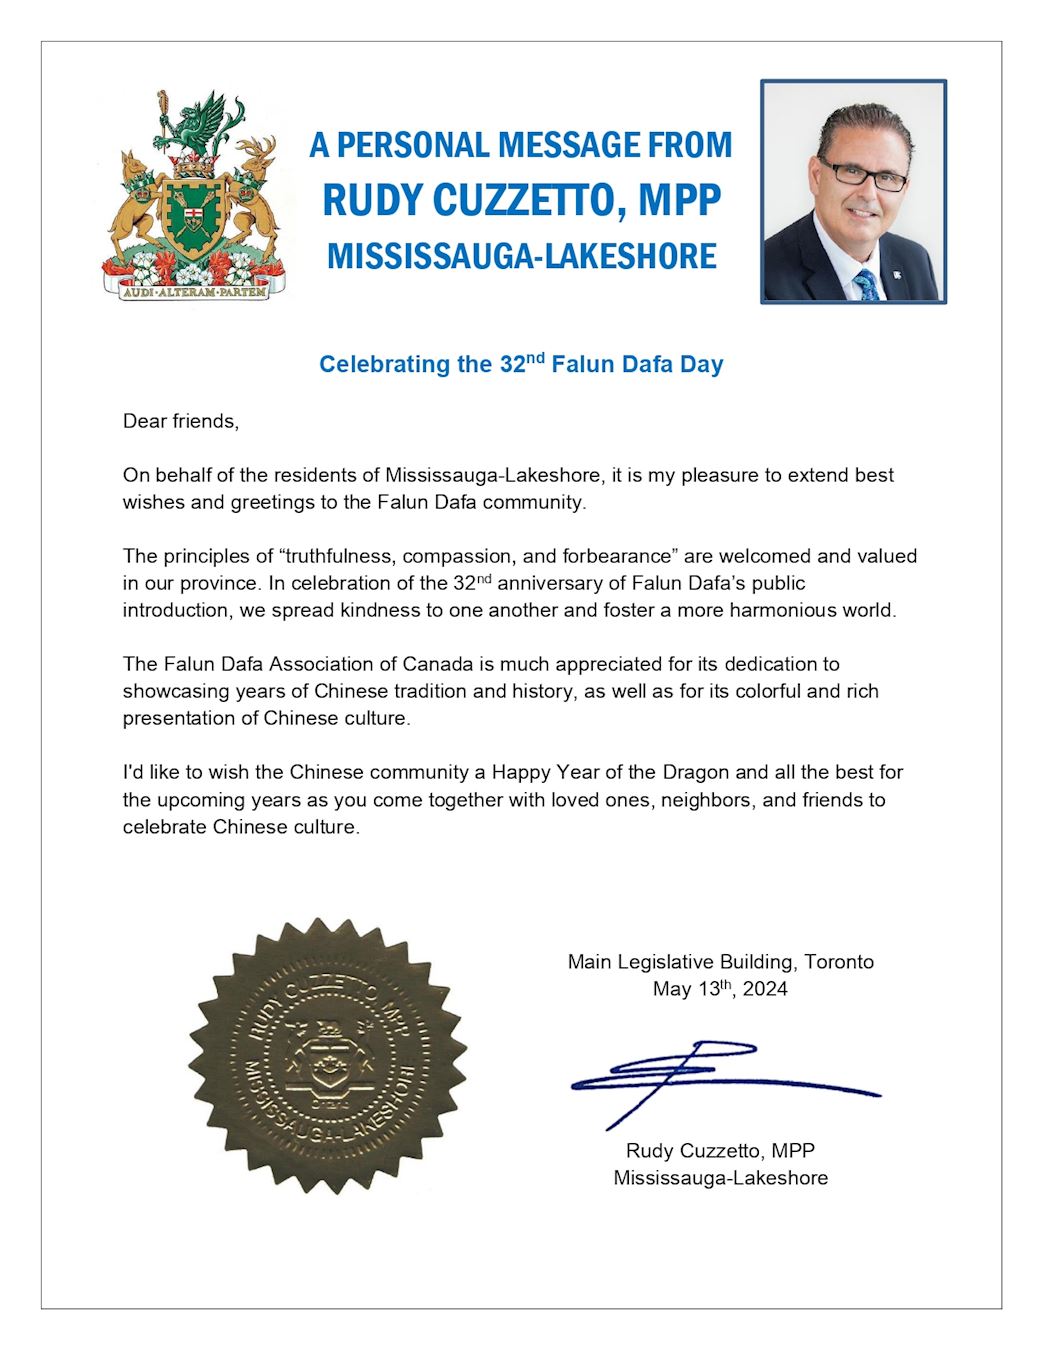 '图7：密西沙加市湖滨区省议员鲁迪·库泽托（Rudy Cuzzetto）的贺信'